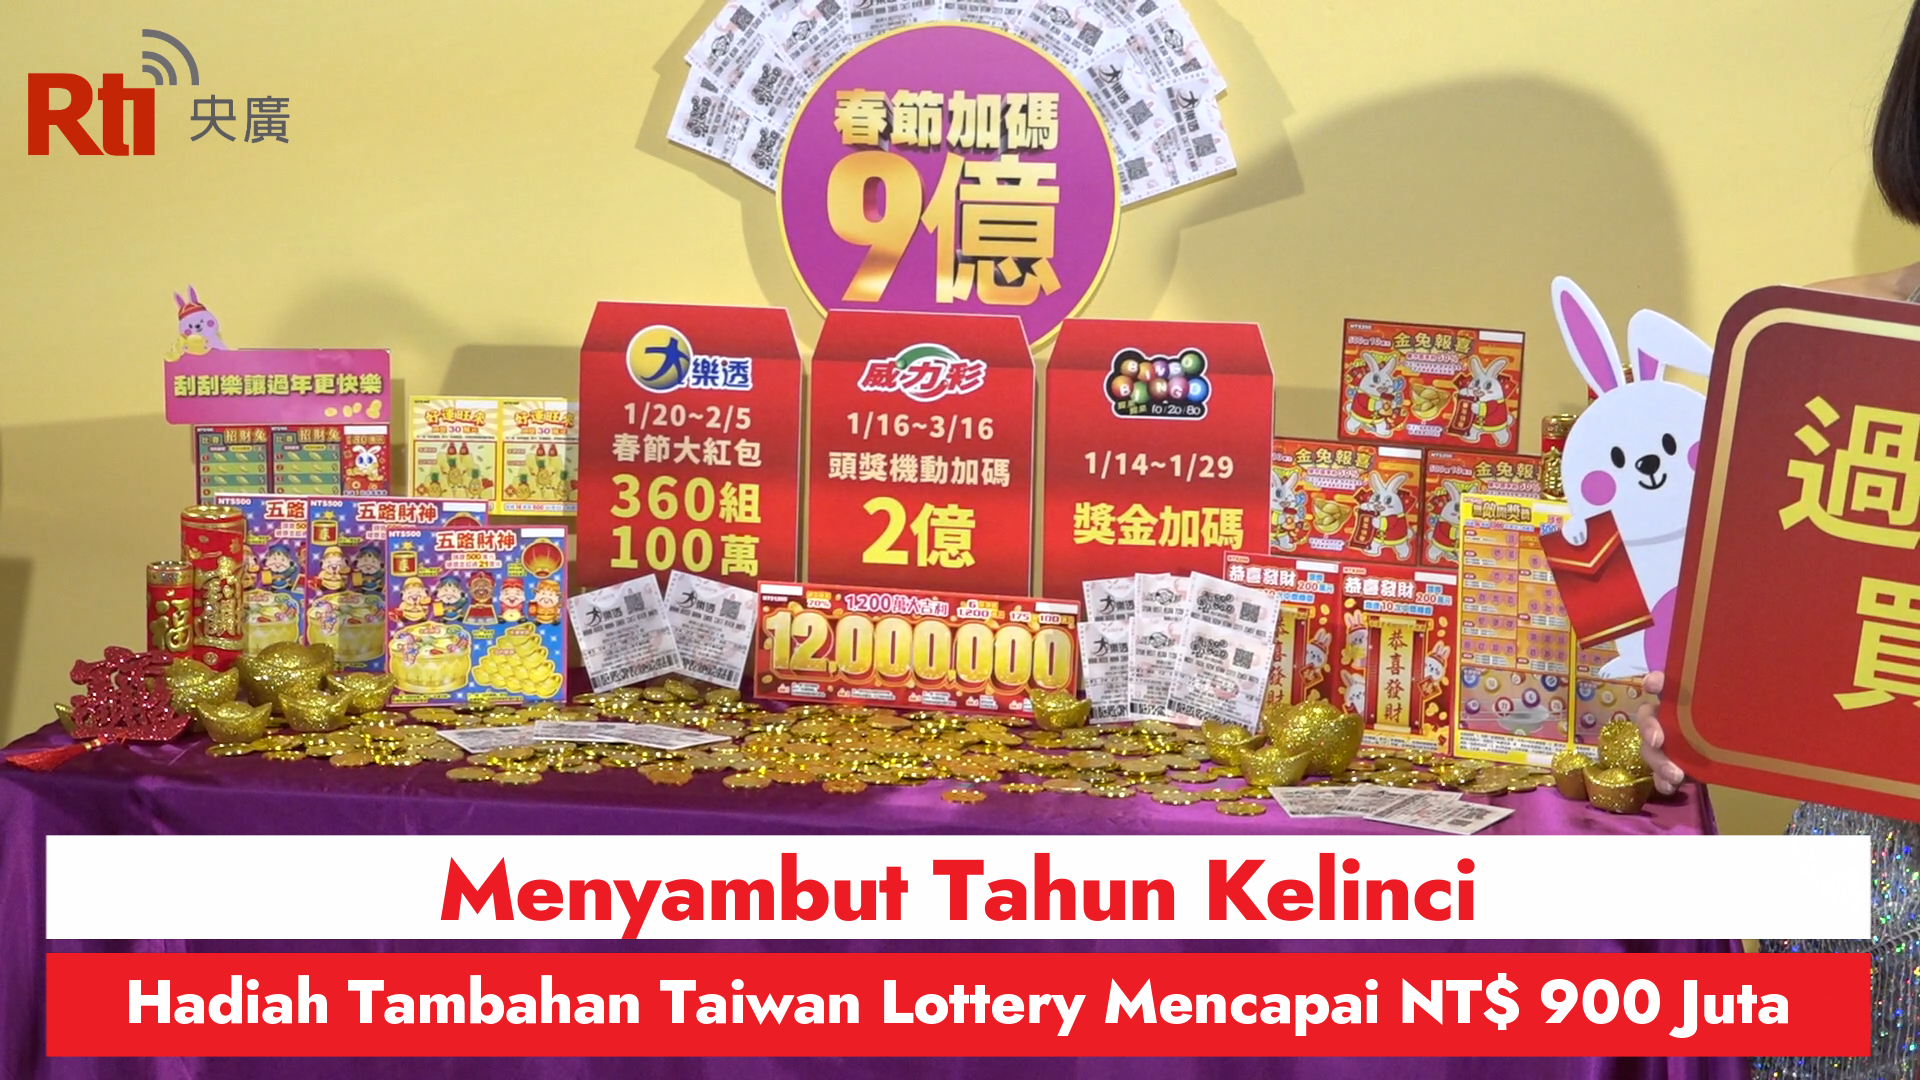 Menyambut Tahun Kelinci, Hadiah Tambahan Taiwan Lottery Mencapai NT$ 900 Juta